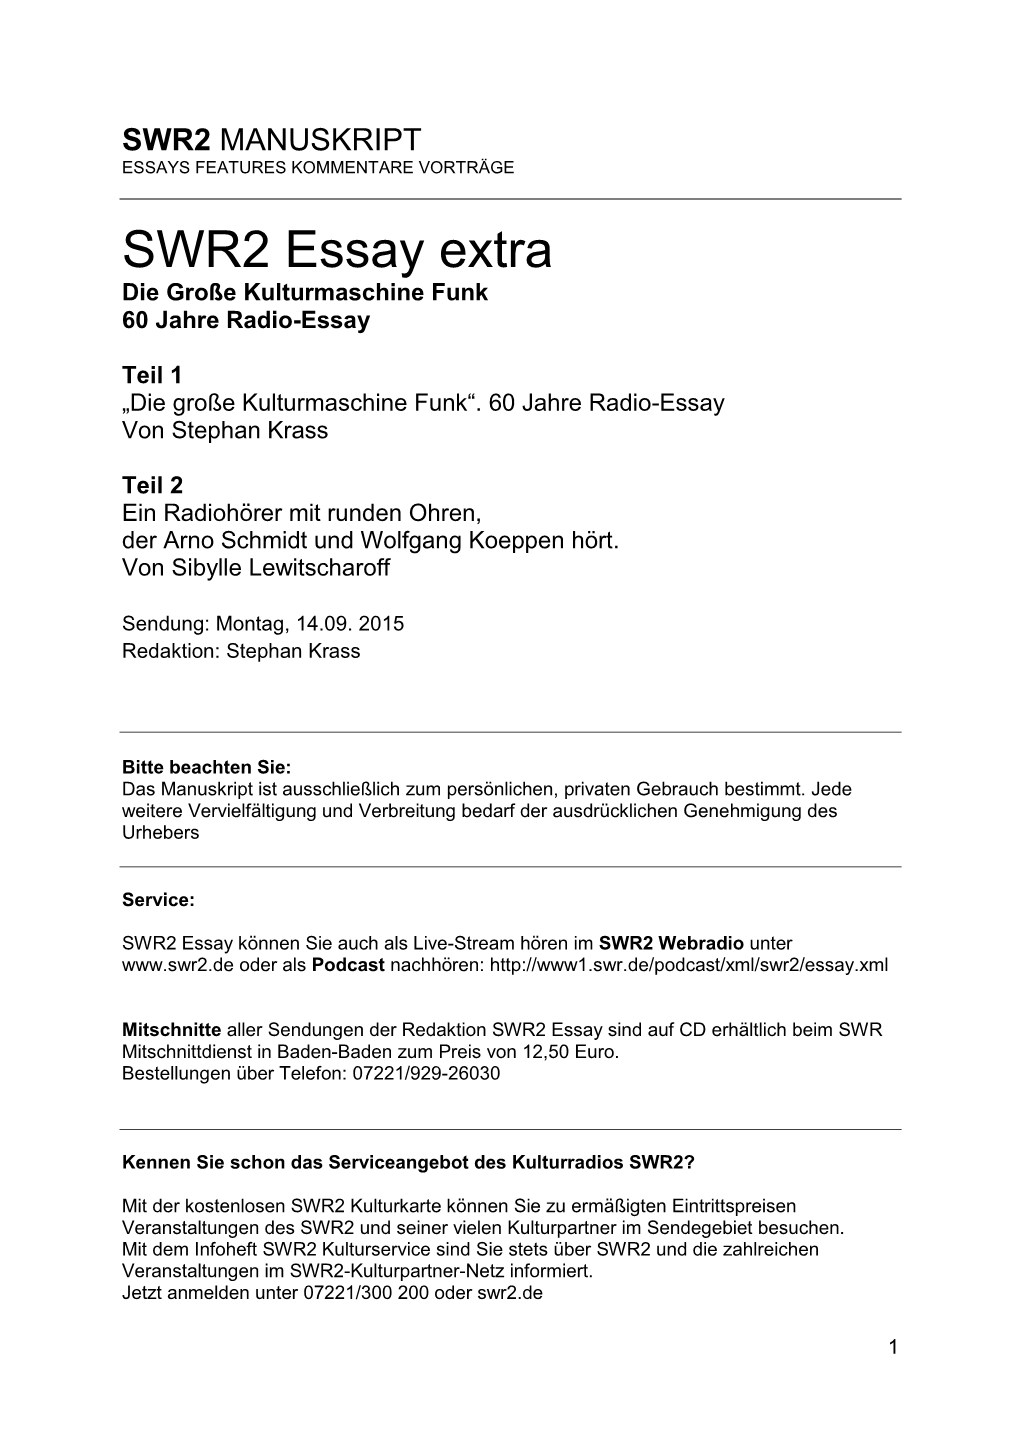 SWR2 Essay Extra Die Große Kulturmaschine Funk 60 Jahre Radio-Essay